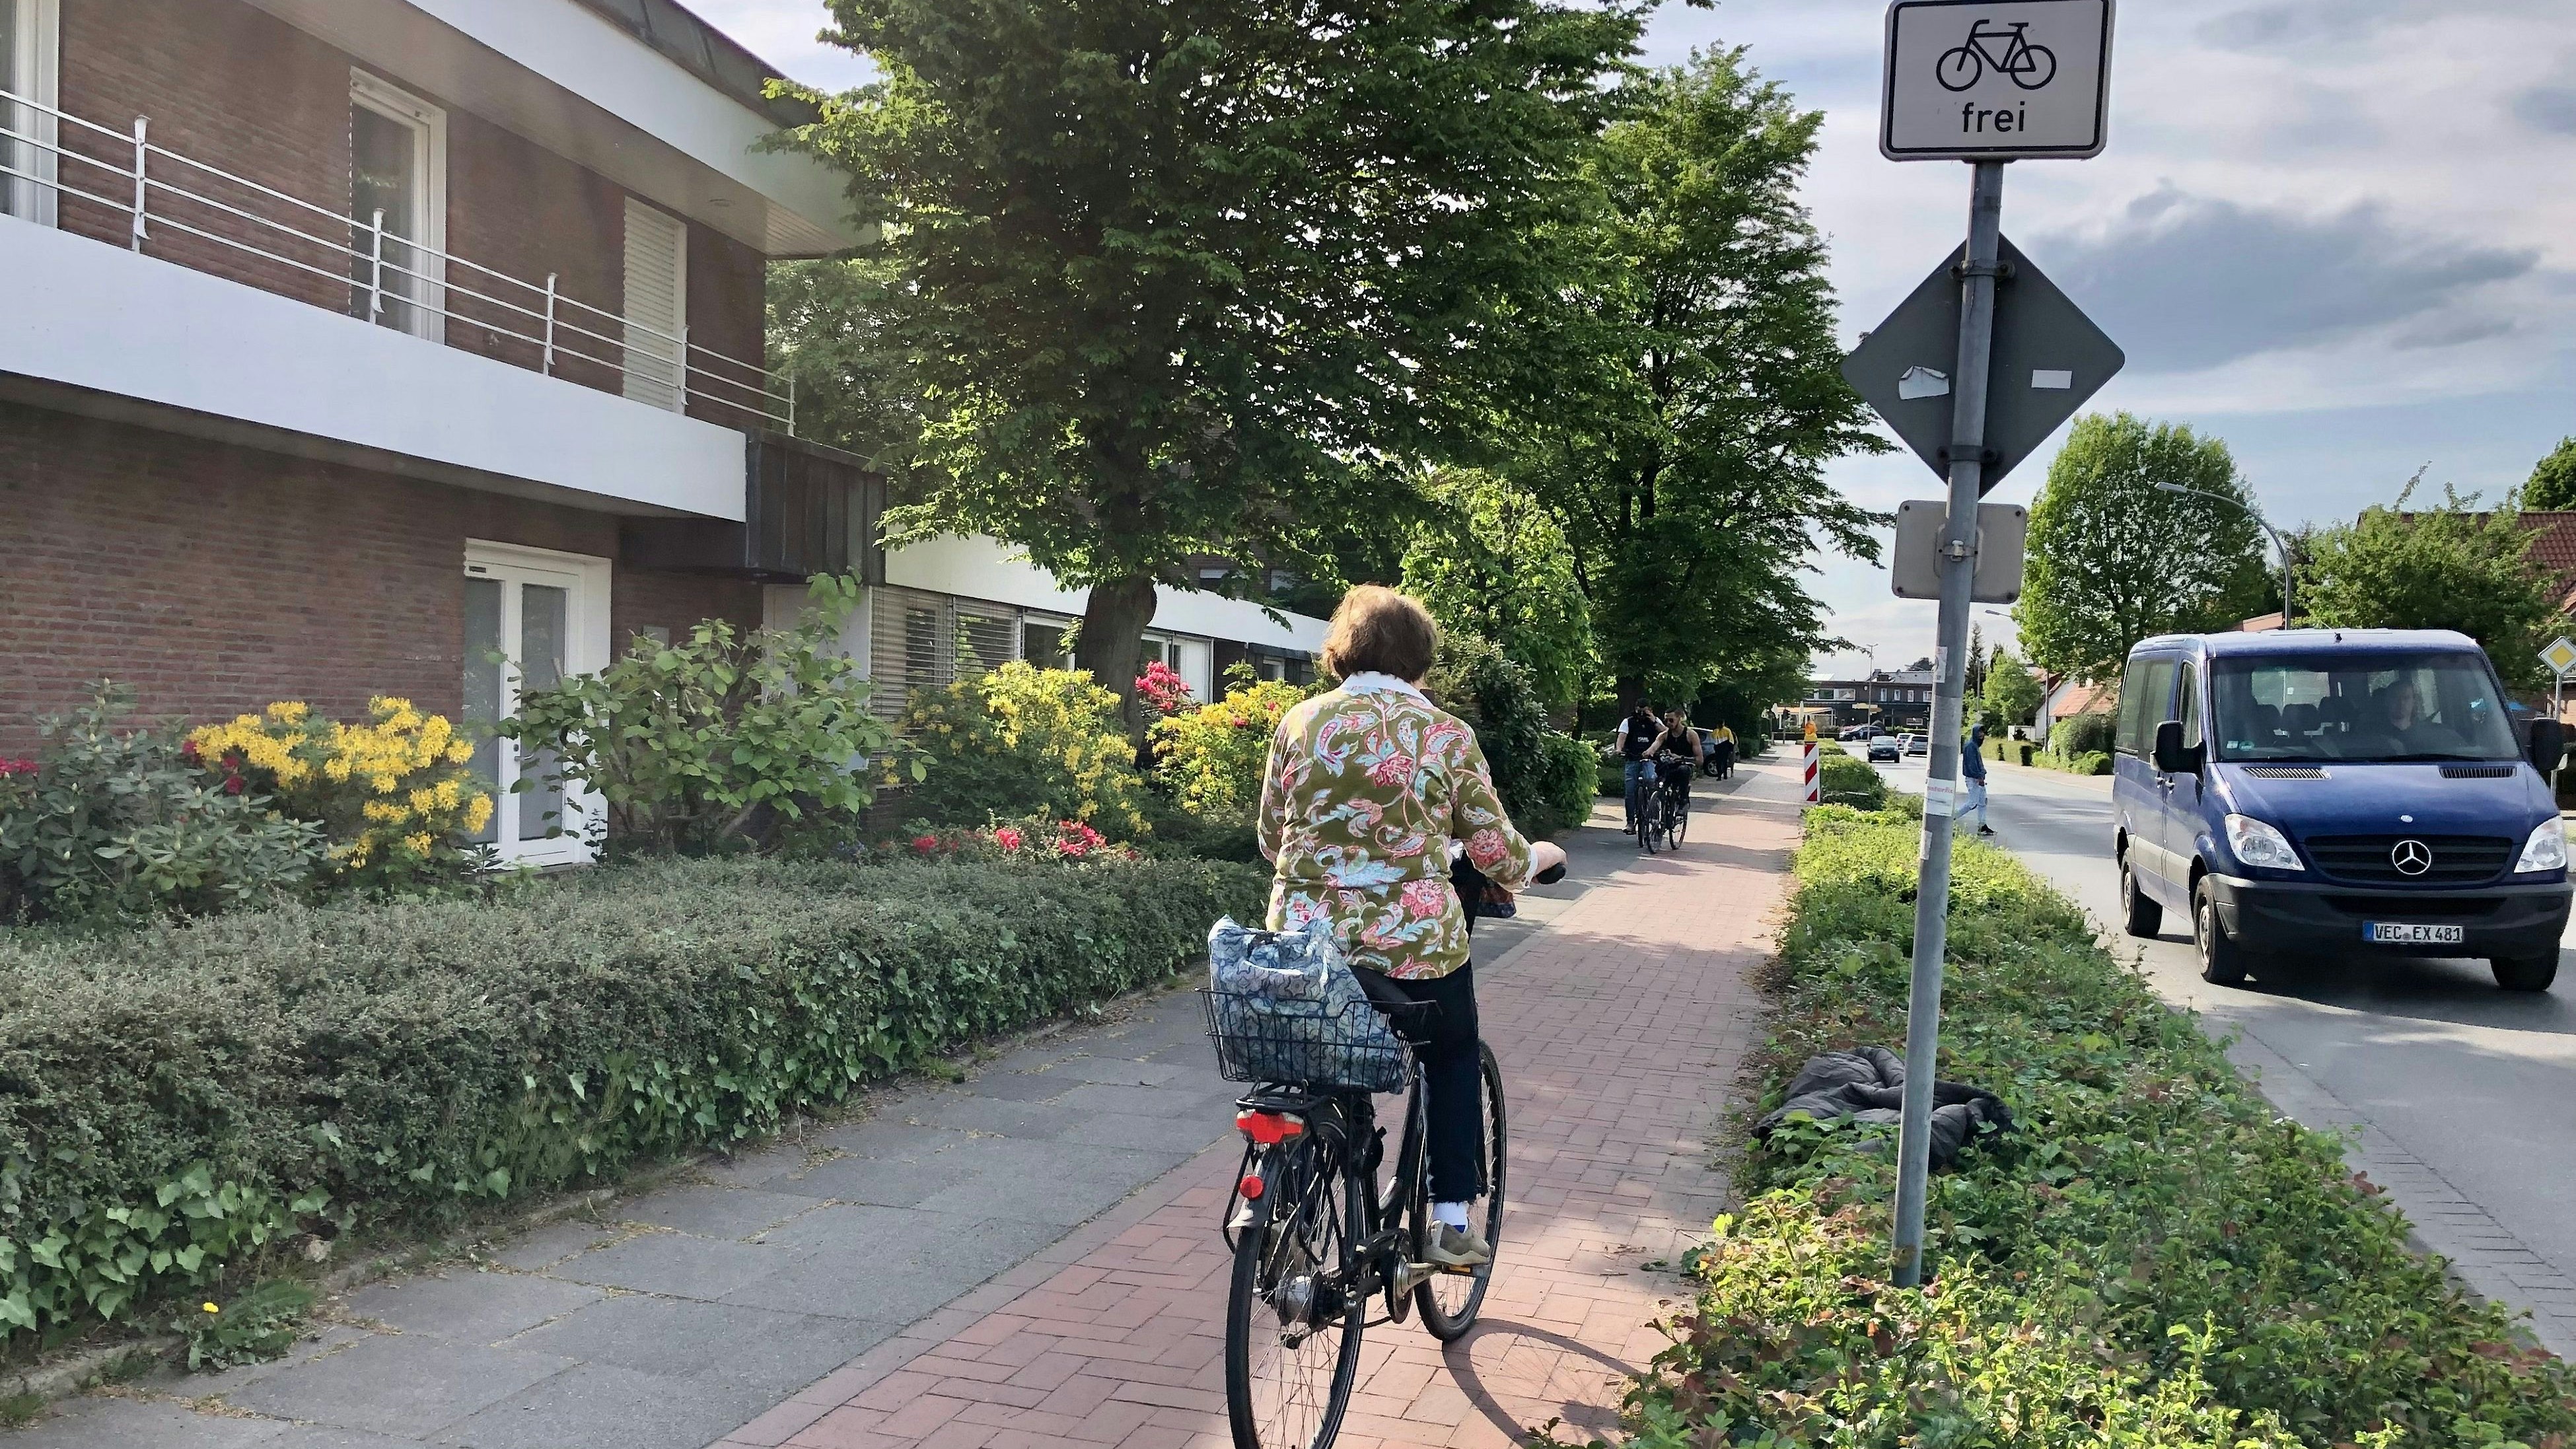 Alles richtig gemacht: Hier darf die Frau mit ihrem Rad auf dem Gehweg fahren, muss es aber nicht. Foto: Berg